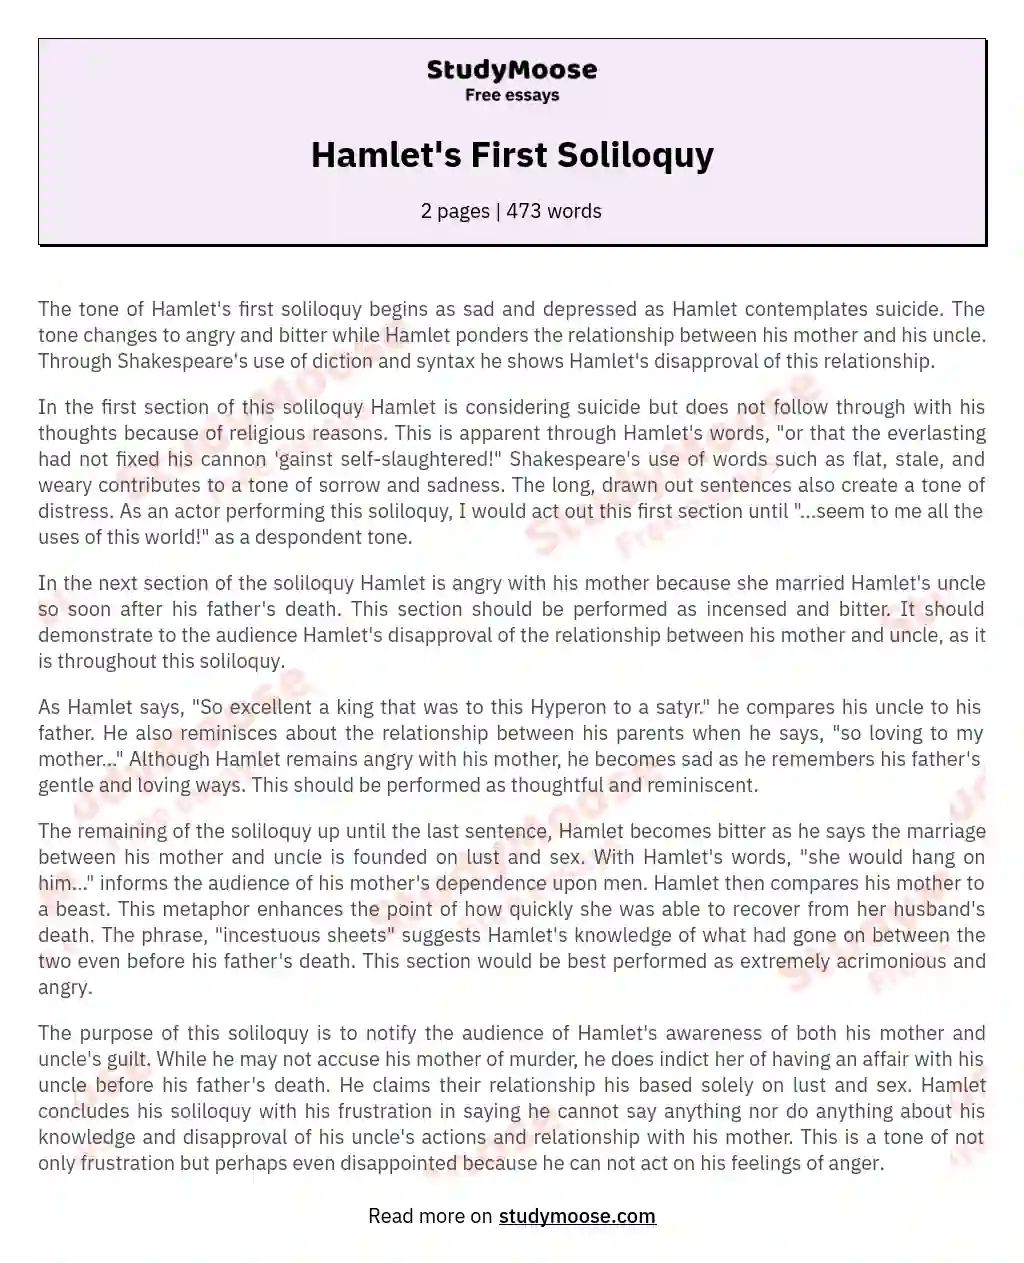 Hamlet's First Soliloquy essay